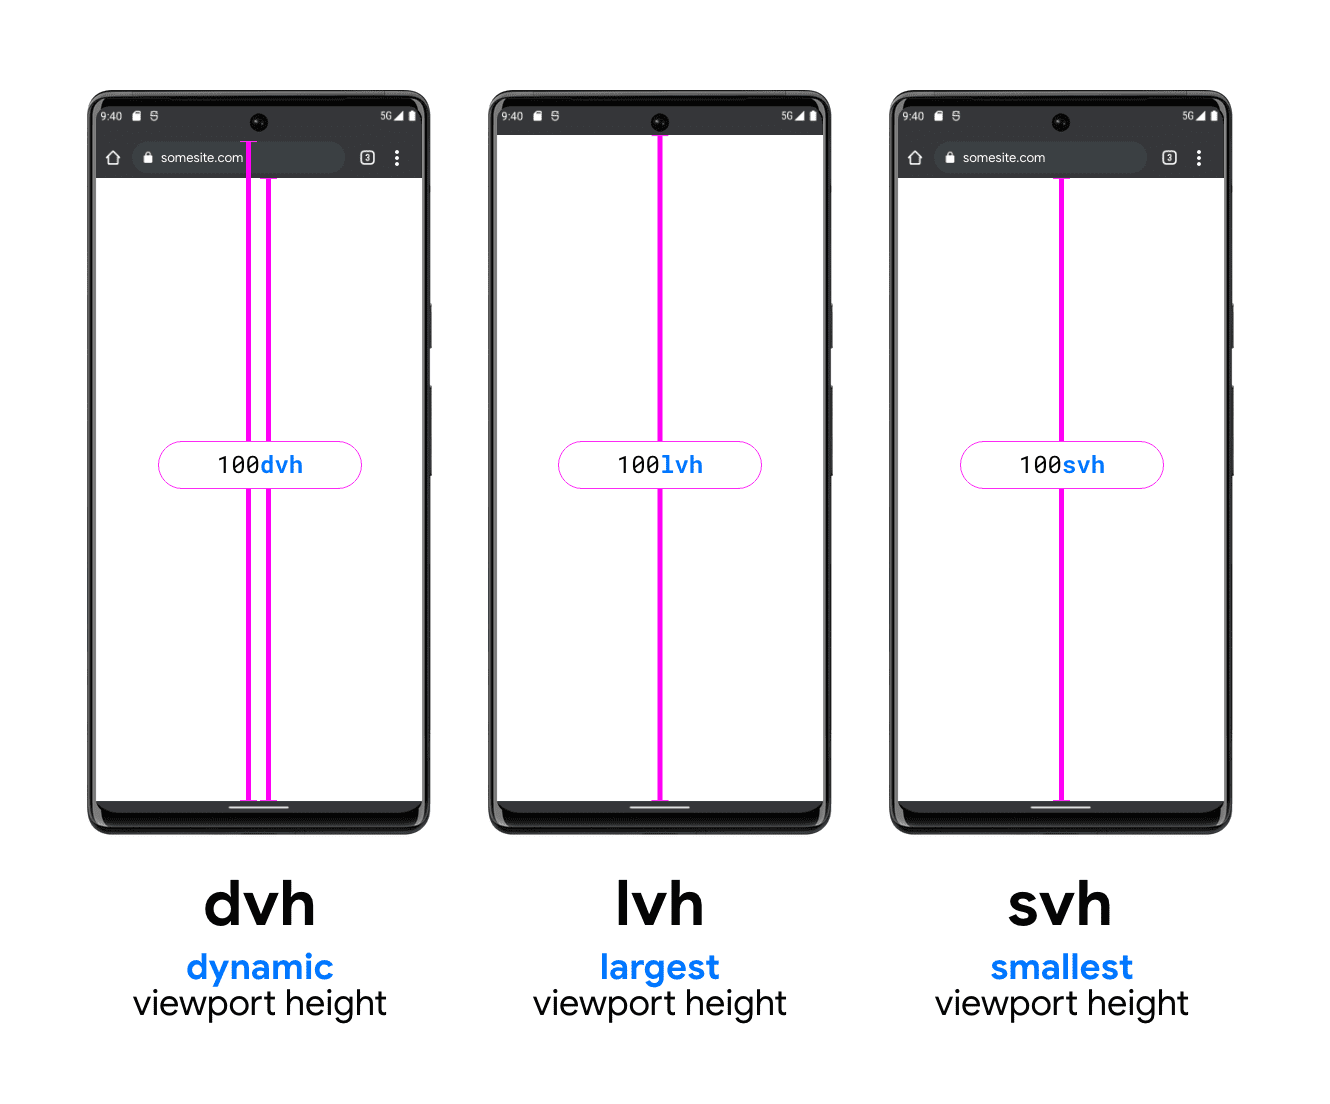 กราฟิกที่มีโทรศัพท์ 3 เครื่องช่วยแสดงภาพ DVH, LVH และ SVH ตัวอย่างโทรศัพท์ DVH มีเส้นแนวตั้ง 2 เส้นระหว่างด้านล่างของแถบค้นหาและด้านล่างของวิวพอร์ต และอีกเส้นอยู่ระหว่างใต้แถบค้นหา (ใต้แถบสถานะของระบบ) ไปจนถึงด้านล่างของวิวพอร์ต ซึ่งแสดงให้เห็นว่า DVH มีความยาว 2 ระดับได้อย่างไร LVH แสดงตรงกลางโดยมีเส้น 1 เส้นอยู่ระหว่างด้านล่างของแถบสถานะของอุปกรณ์และปุ่มบนวิวพอร์ตของโทรศัพท์ สุดท้ายคือตัวอย่างหน่วย SVH ที่แสดงเส้นจากด้านล่างของแถบค้นหาของเบราว์เซอร์ไปจนถึงด้านล่างของวิวพอร์ต